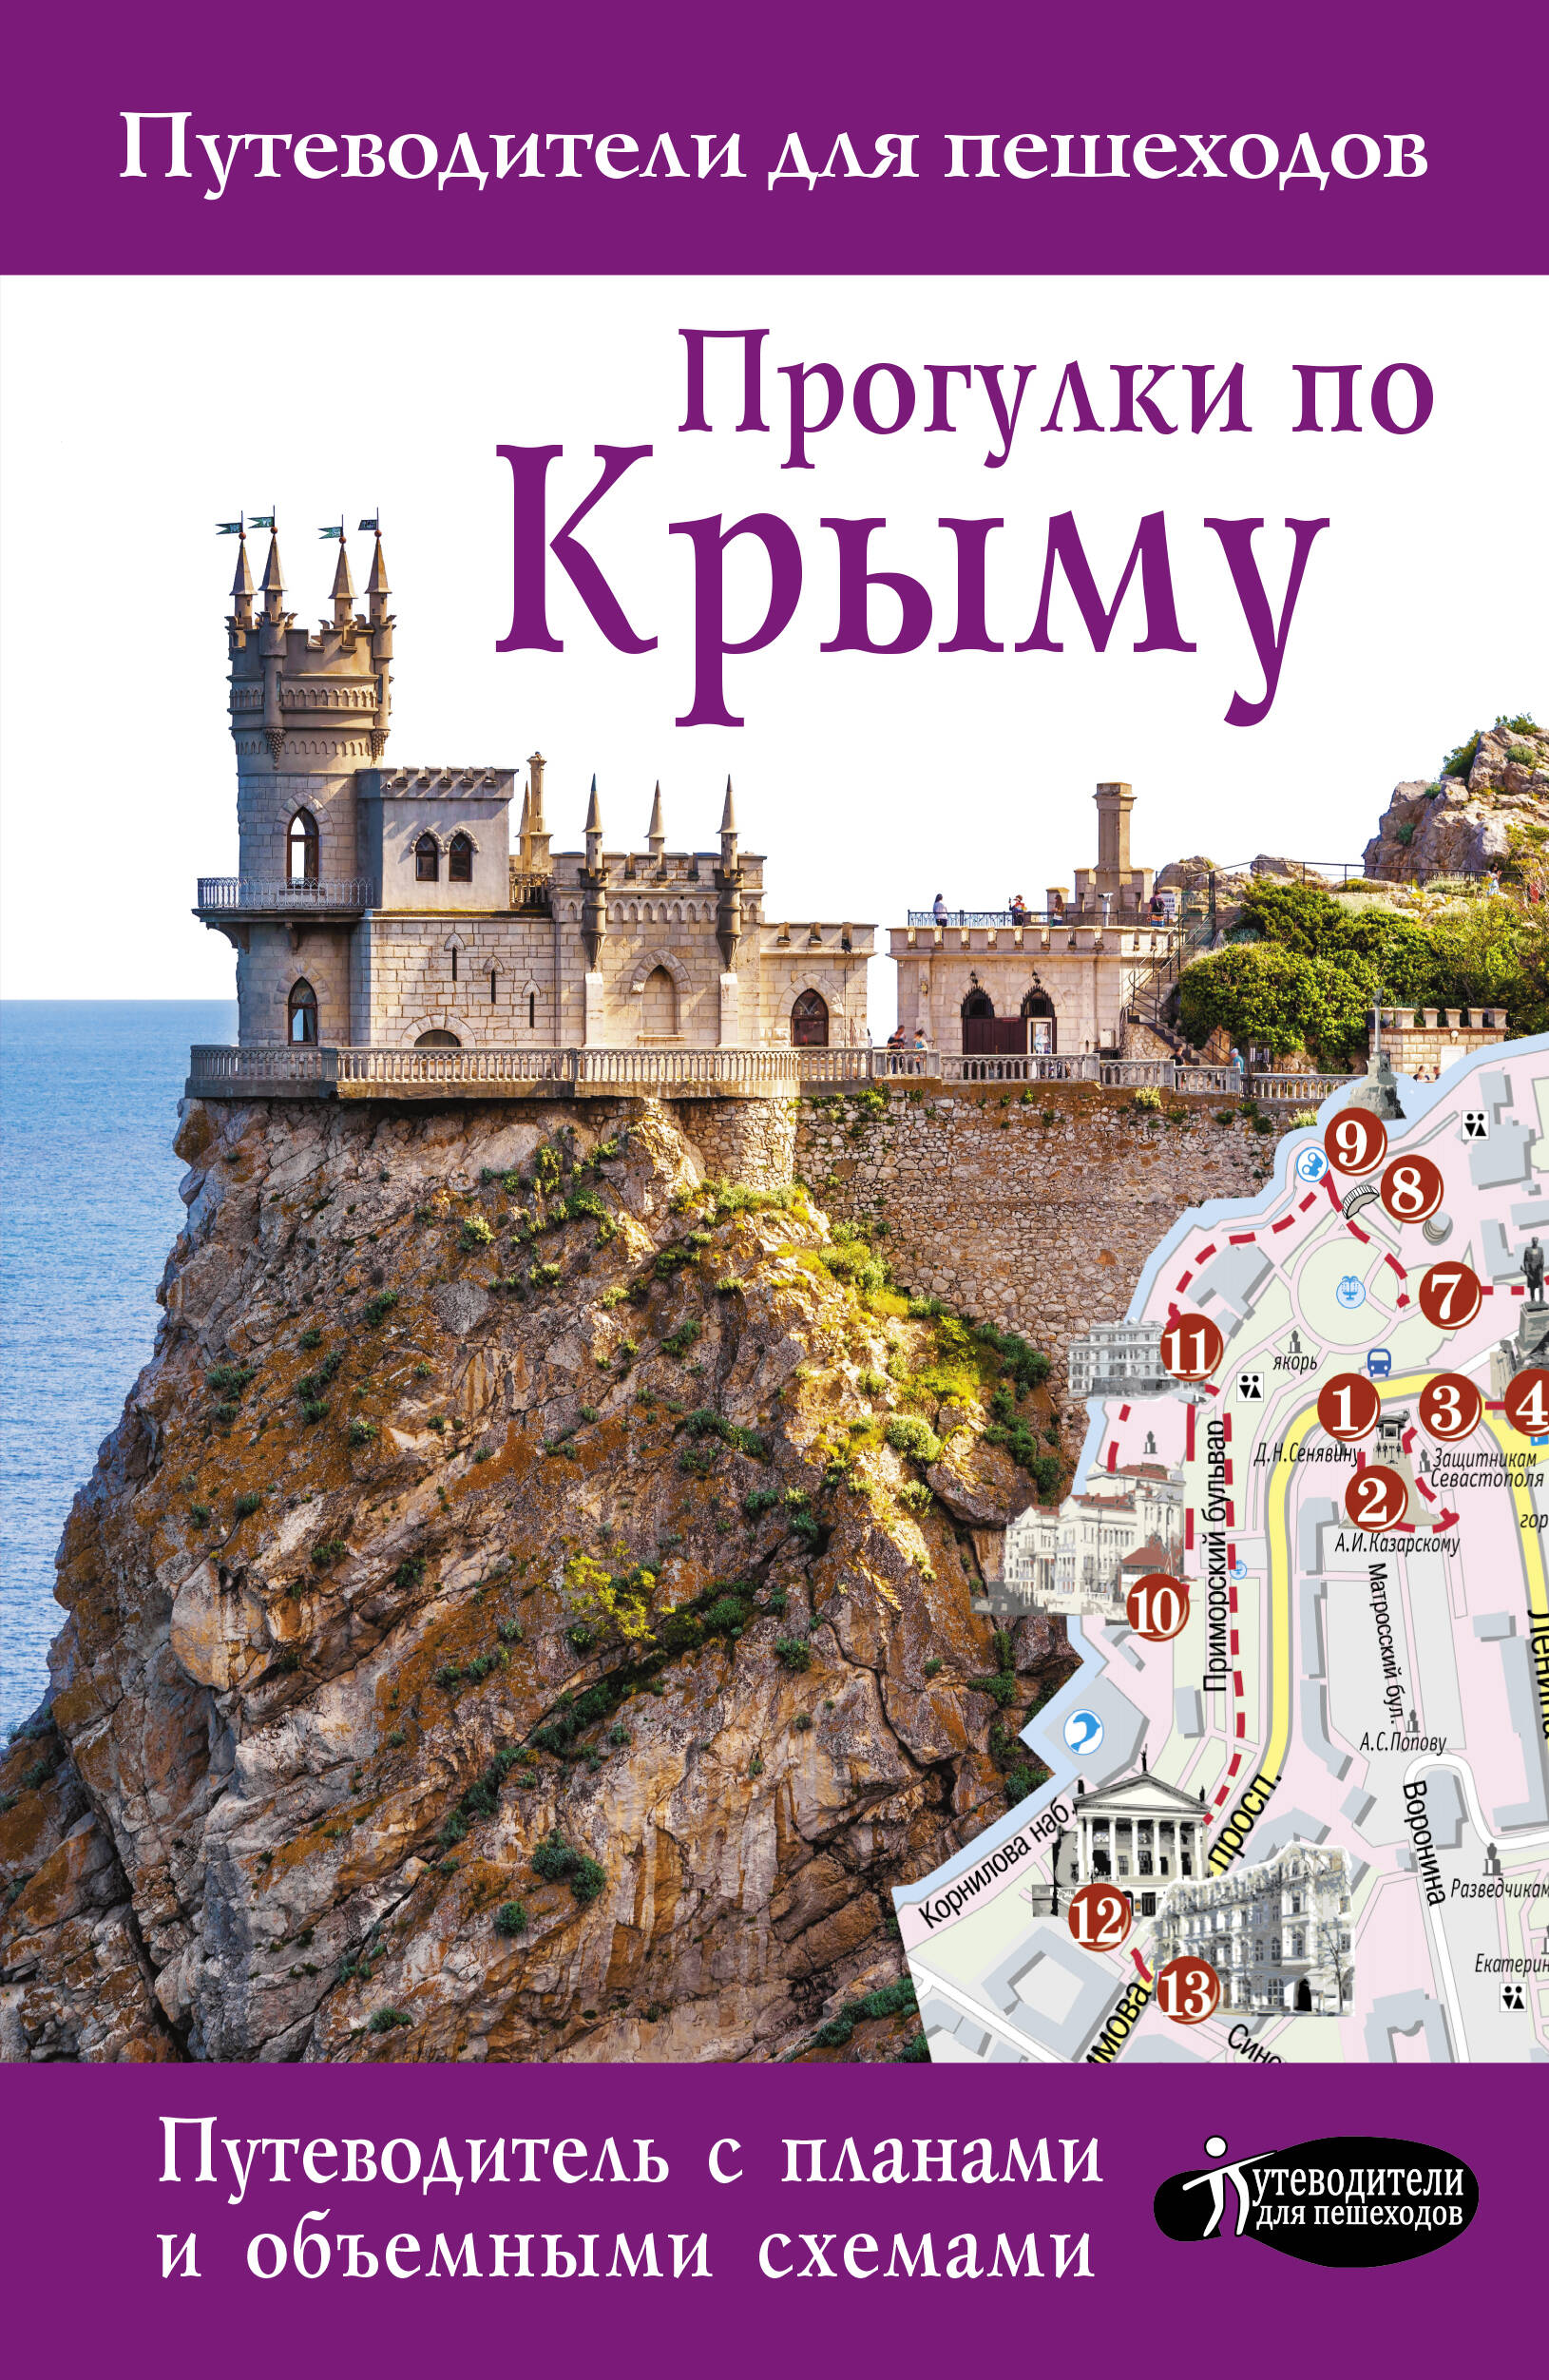  Прогулки по Крыму - страница 0